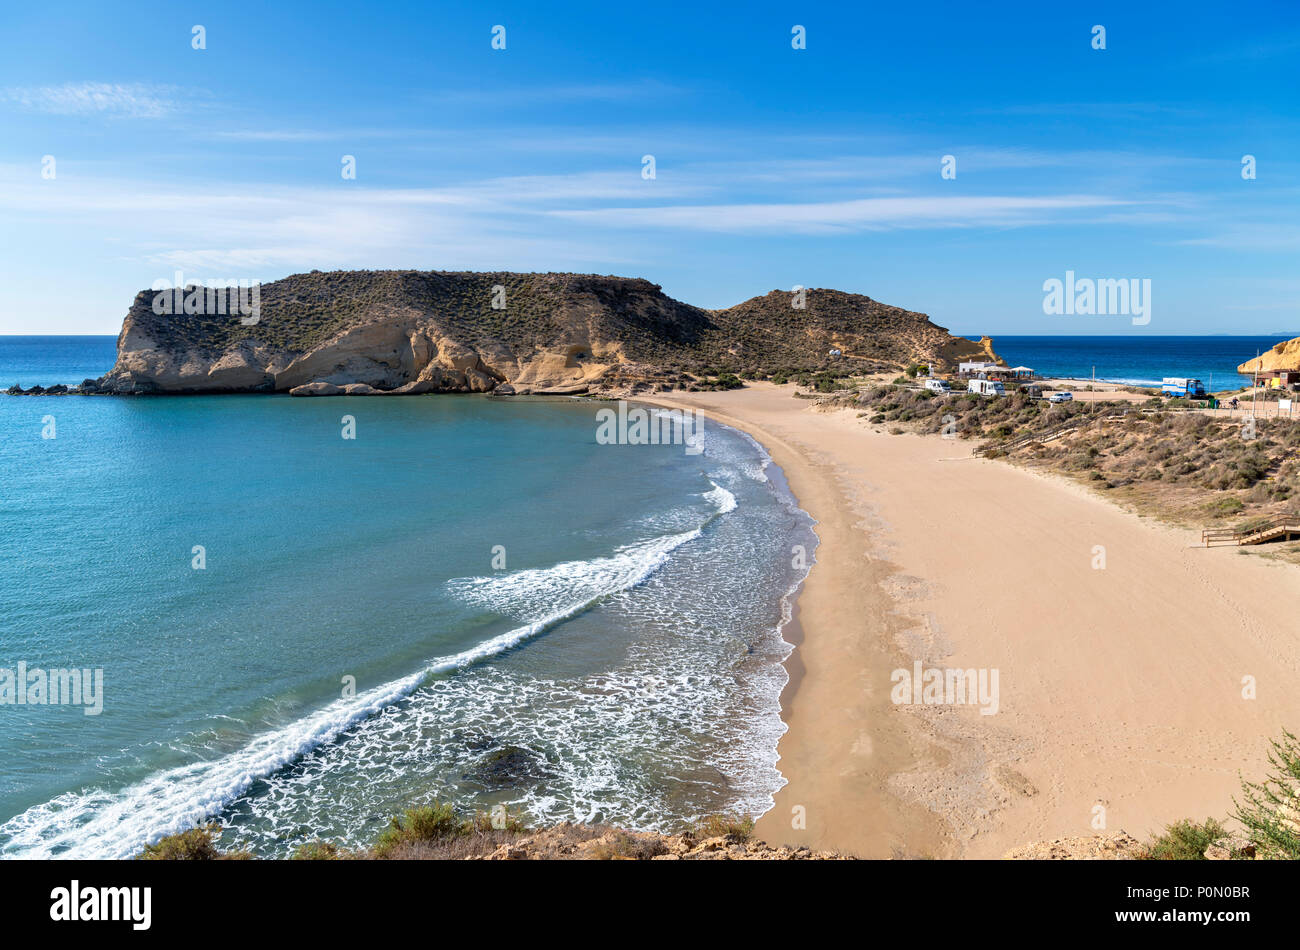 Playa Carolina beach, Cuatro Calas, Aguilas, Murcia, Spain Stock Photo